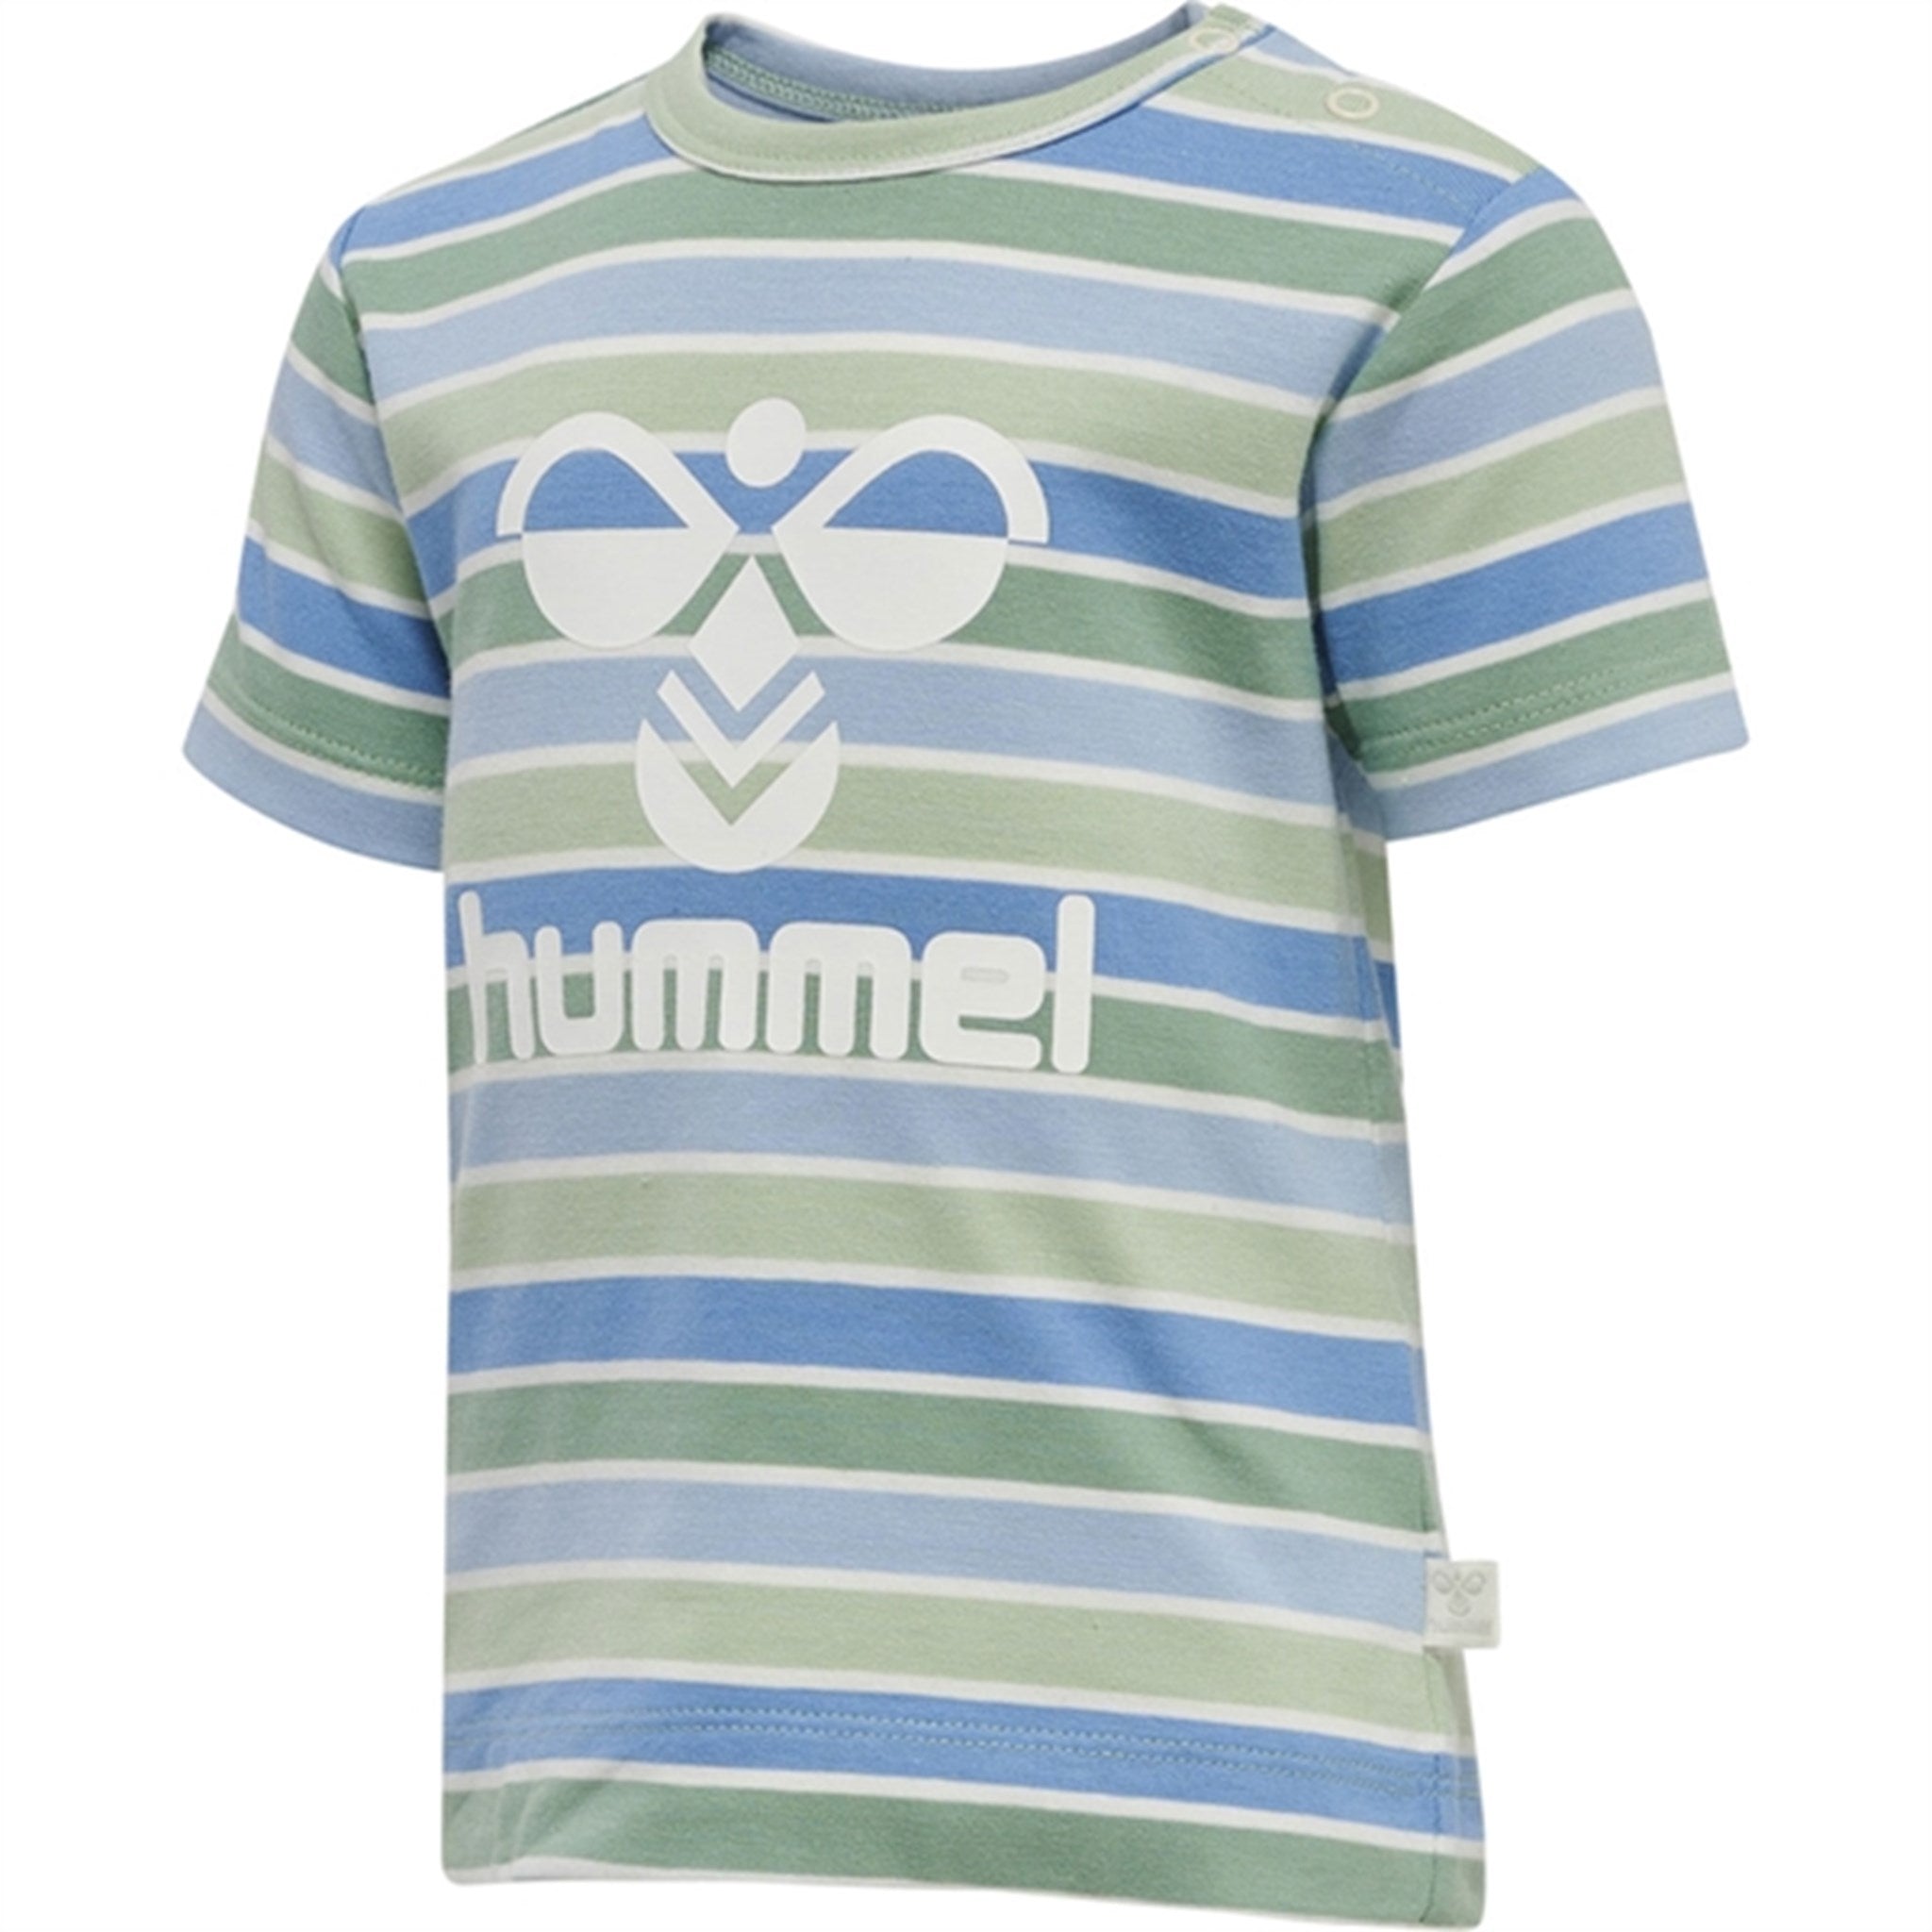 Hummel Grayed Jade Pelle T-shirt 4